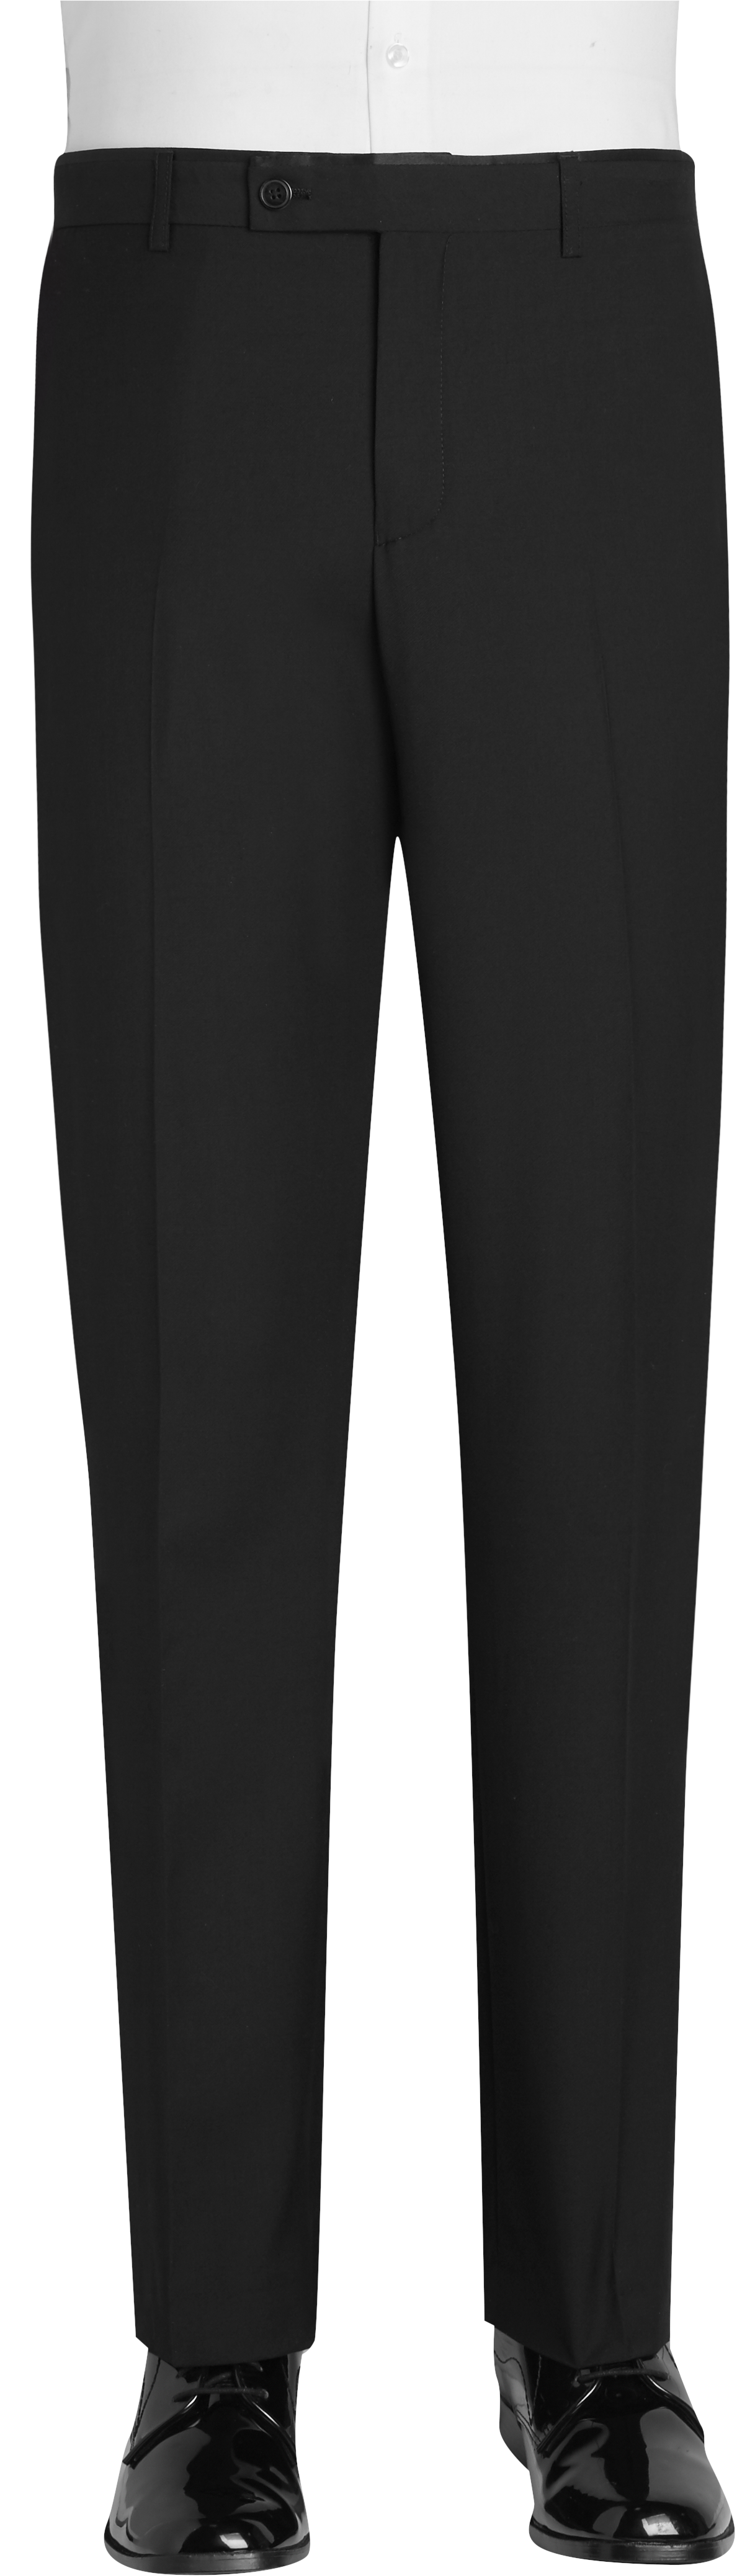 Paisley & Gray Slim Fit Tuxedo Pants, Black - Mens Suits - Men's Wearhouse